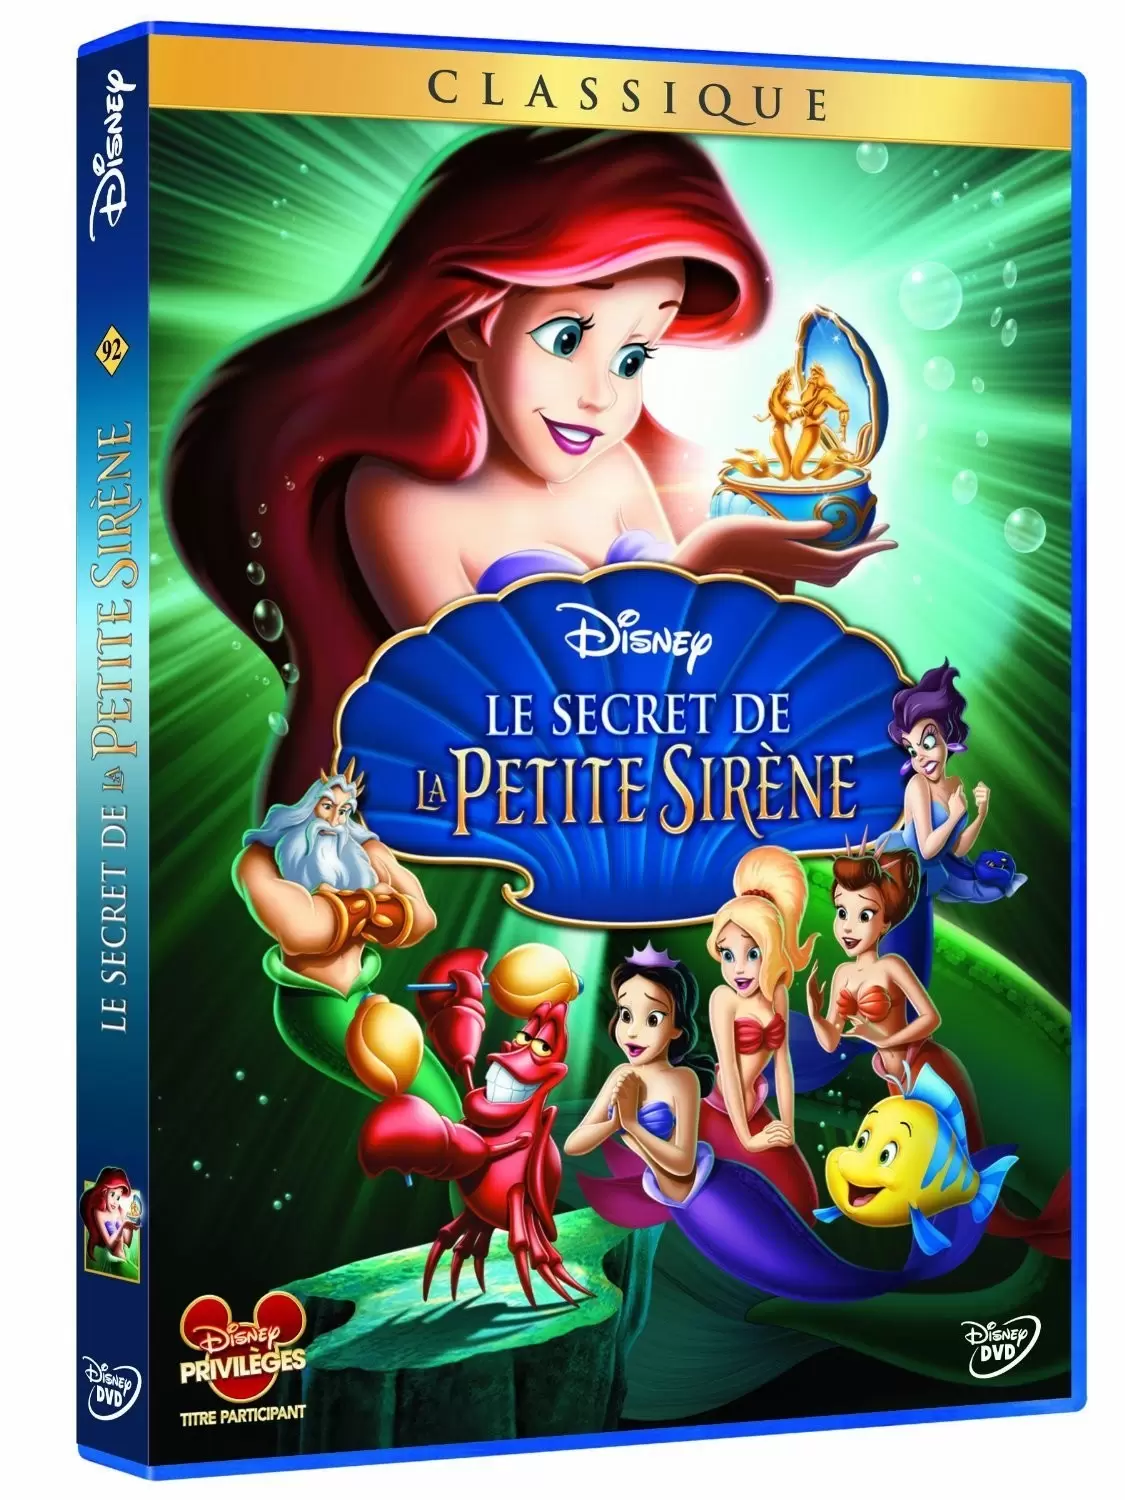 Les grands classiques de Disney en DVD - Le secret de la petite sirène